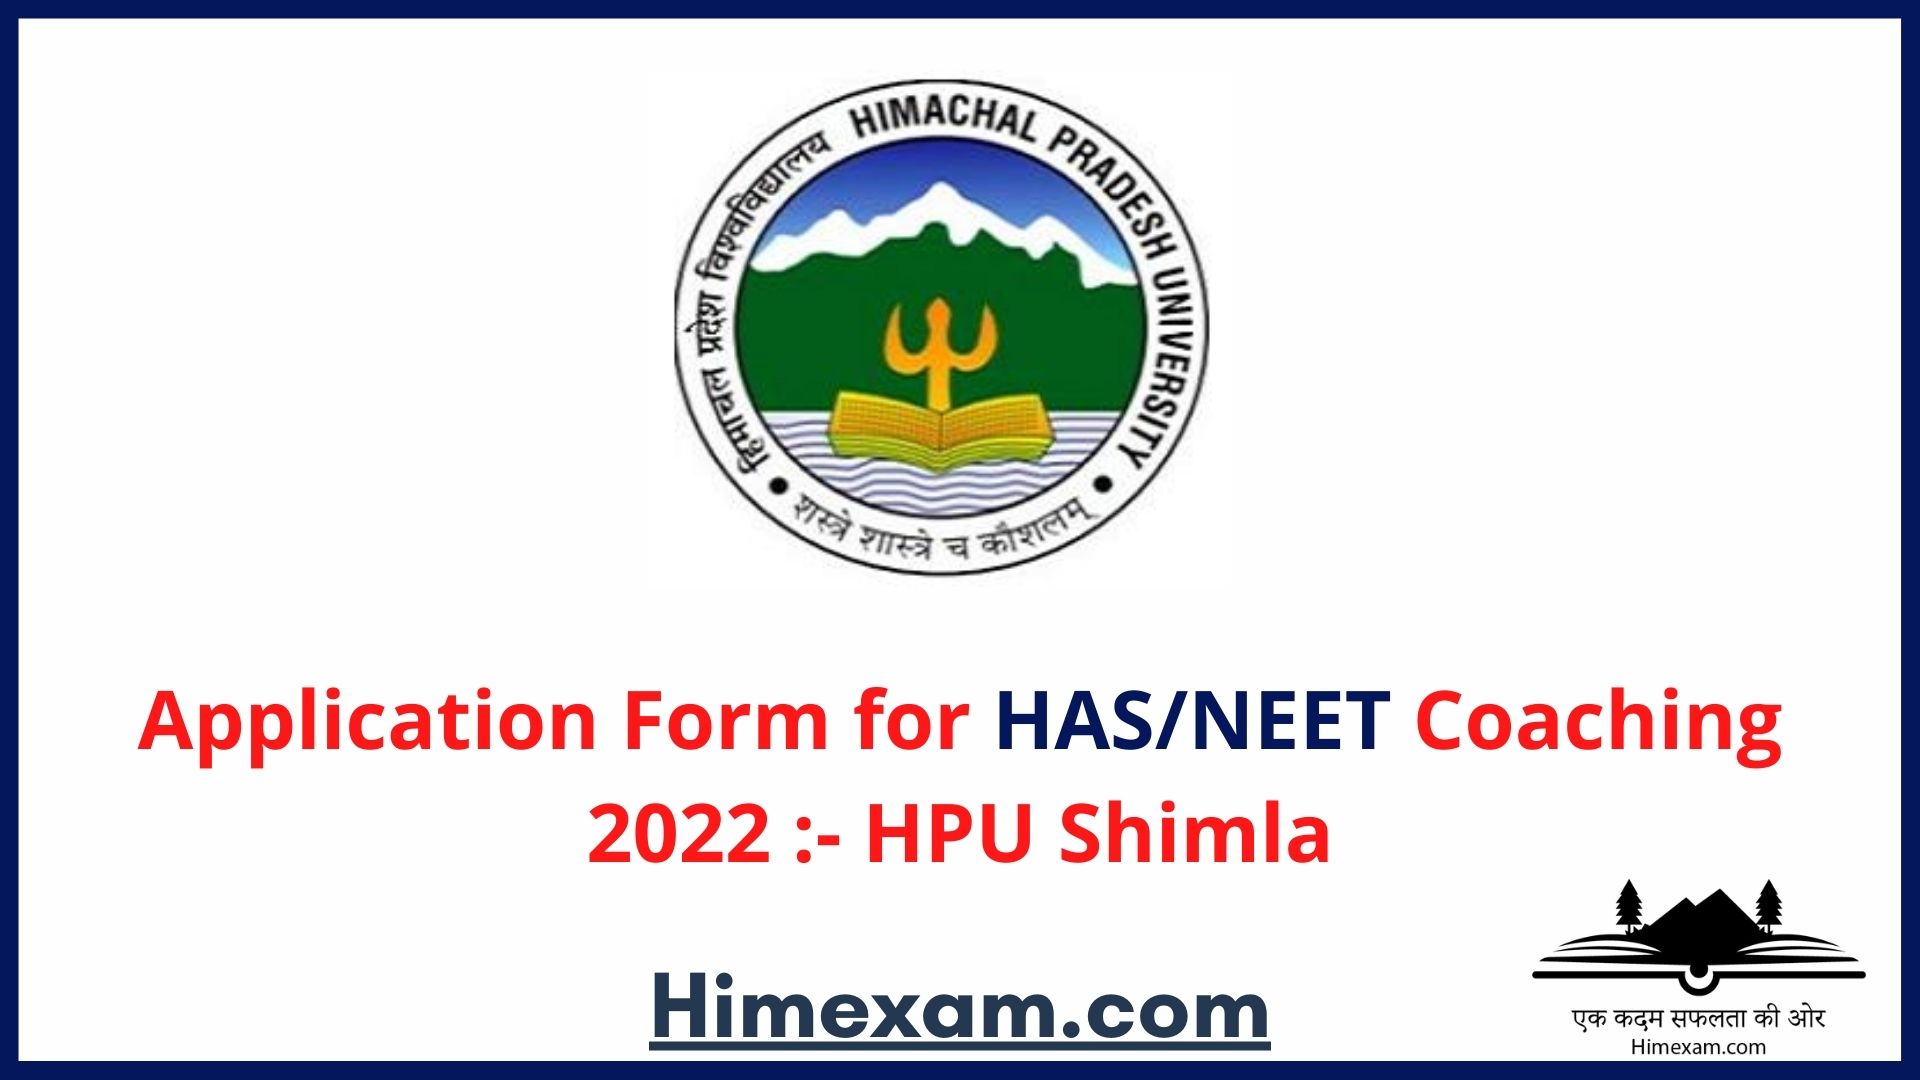 Application Form for HAS/NEET Coaching 2022 :- HPU Shimla